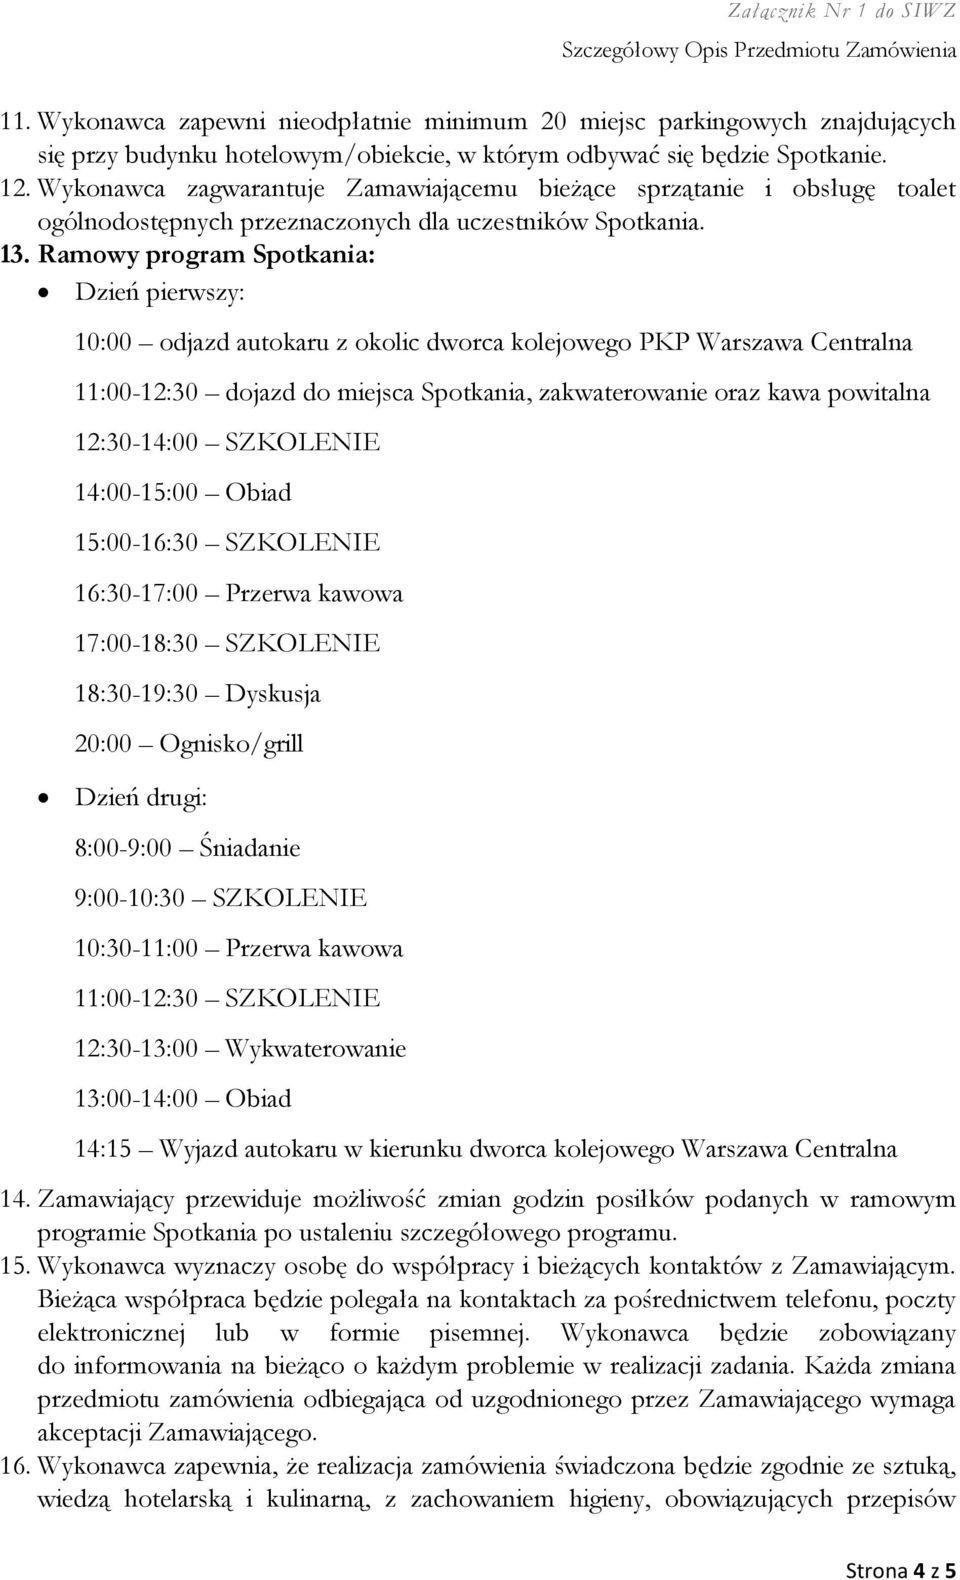 Ramowy program Spotkania: Dzień pierwszy: 10:00 odjazd autokaru z okolic dworca kolejowego PKP Warszawa Centralna 11:00-12:30 dojazd do miejsca Spotkania, zakwaterowanie oraz kawa powitalna